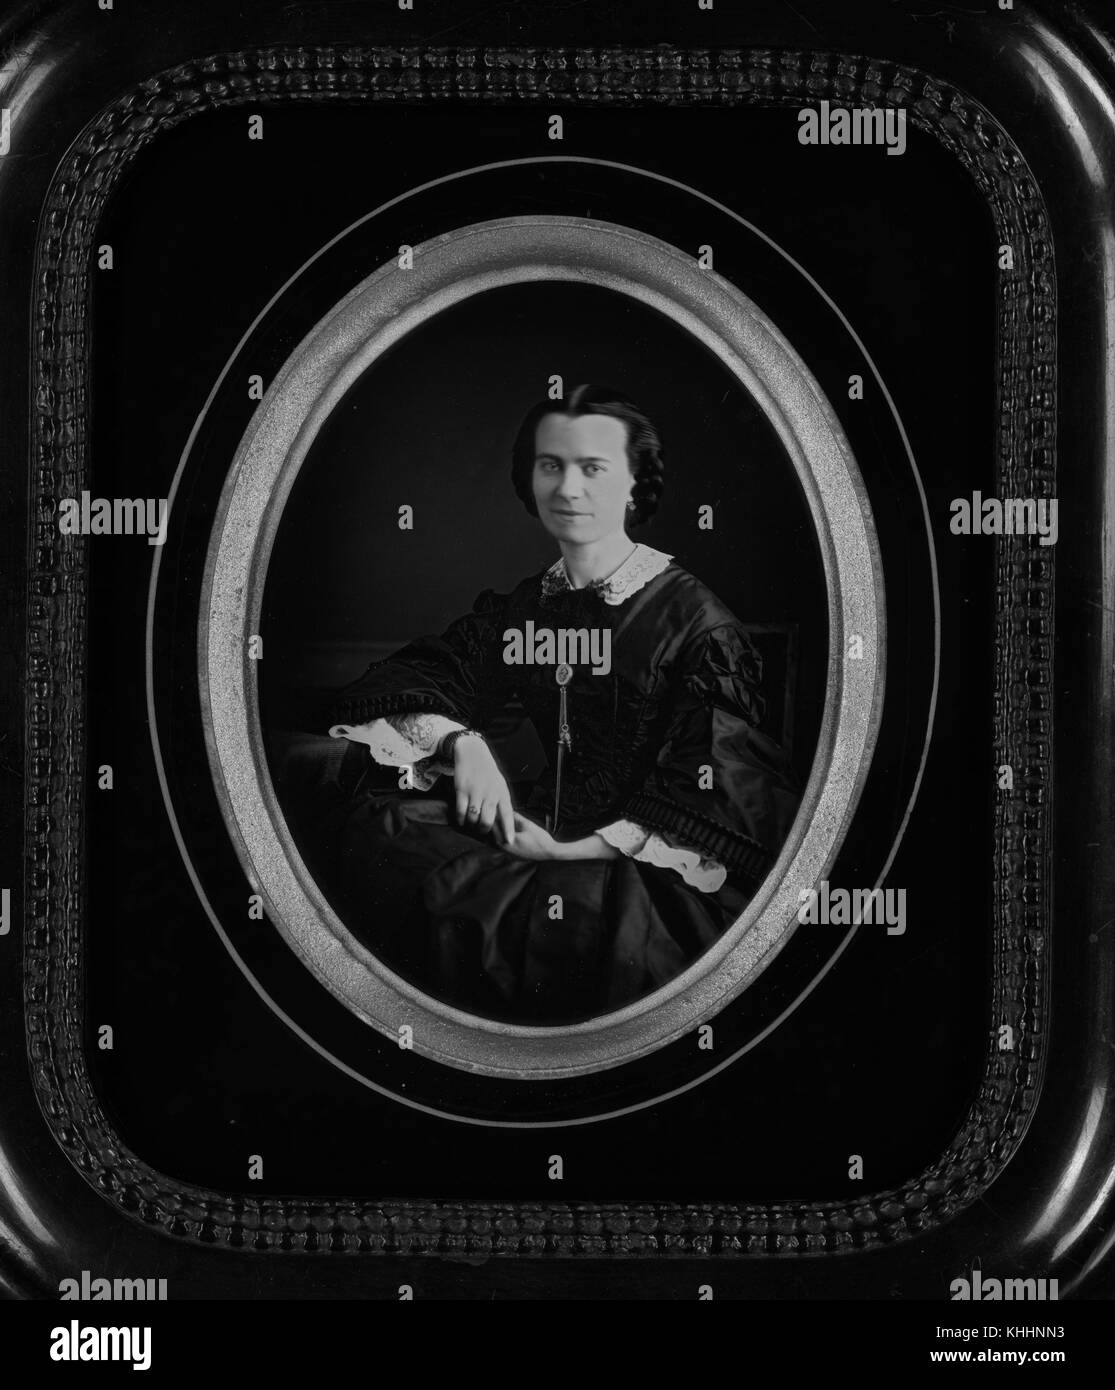 Incorniciato, daguerreotype ovale di una donna seduta, indossando un abito nero con maniche lunghe e bianco pizzo lungo il collare e la parte inferiore dei manicotti, 1854. dalla biblioteca pubblica di new york. Foto Stock